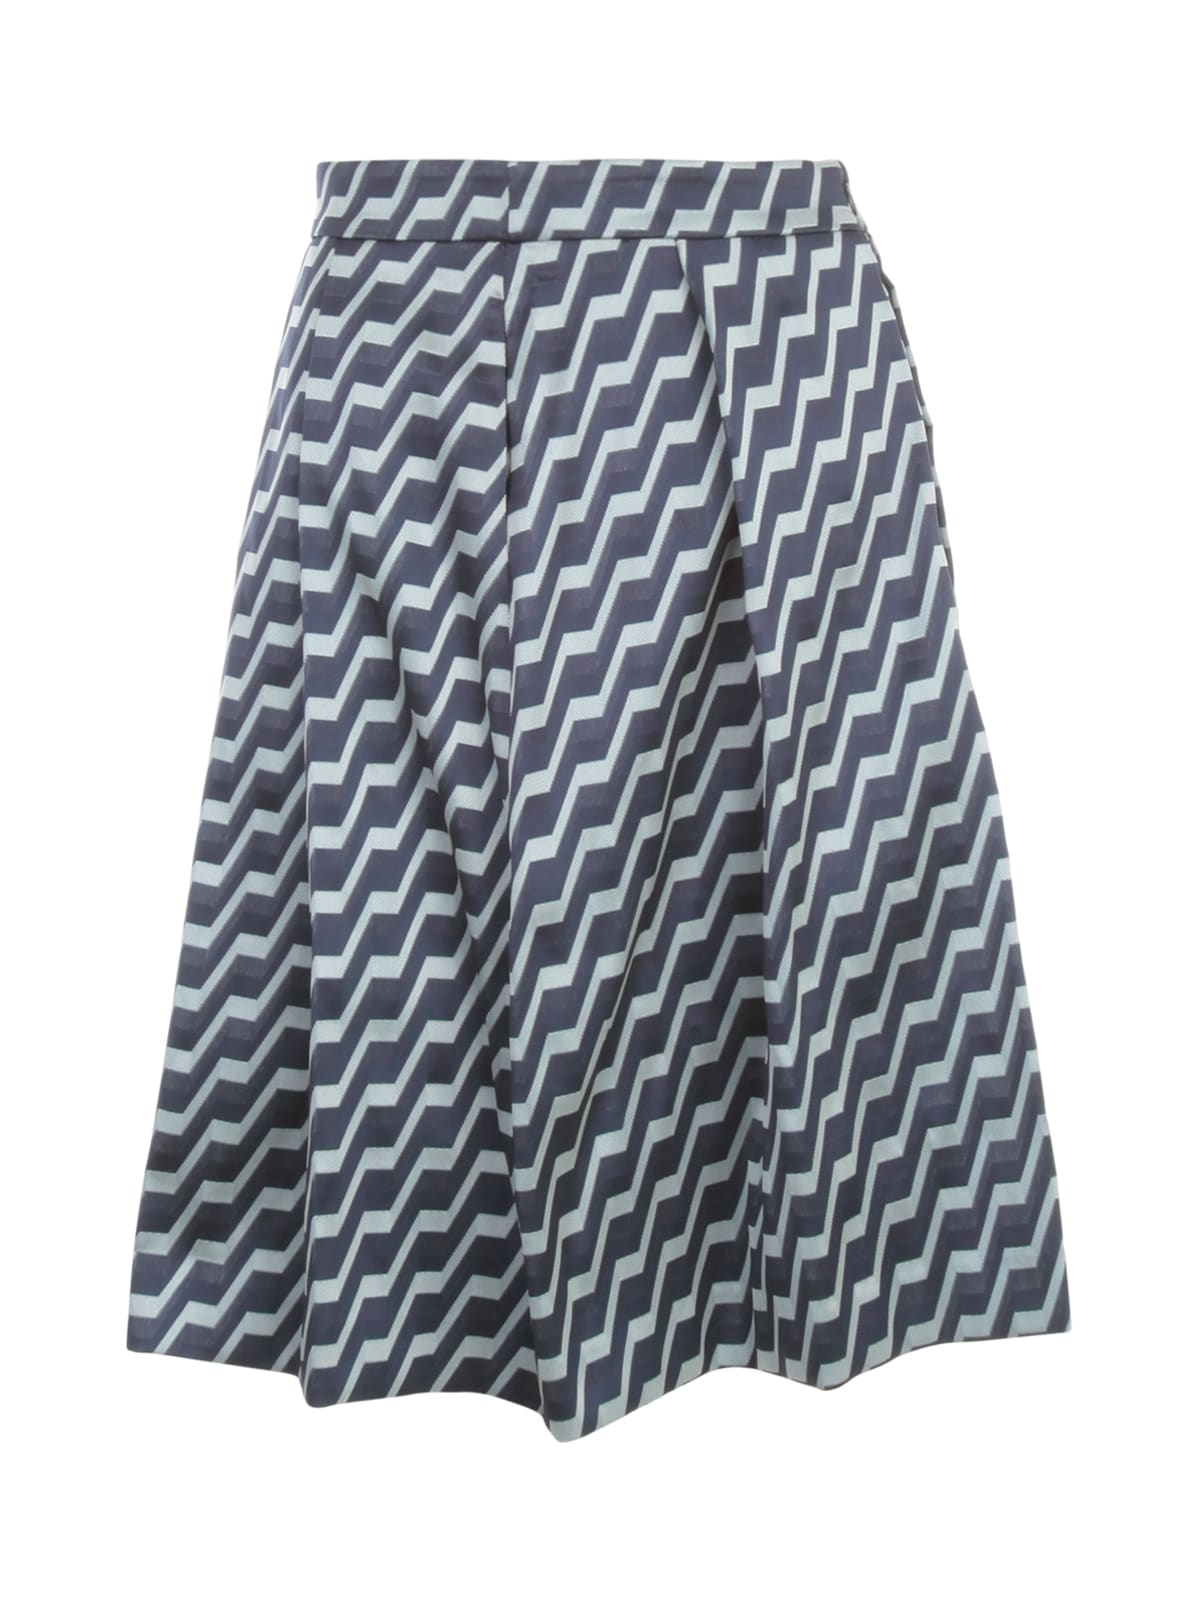 Emporio Armani Jacquard Printing Pleated Skirt